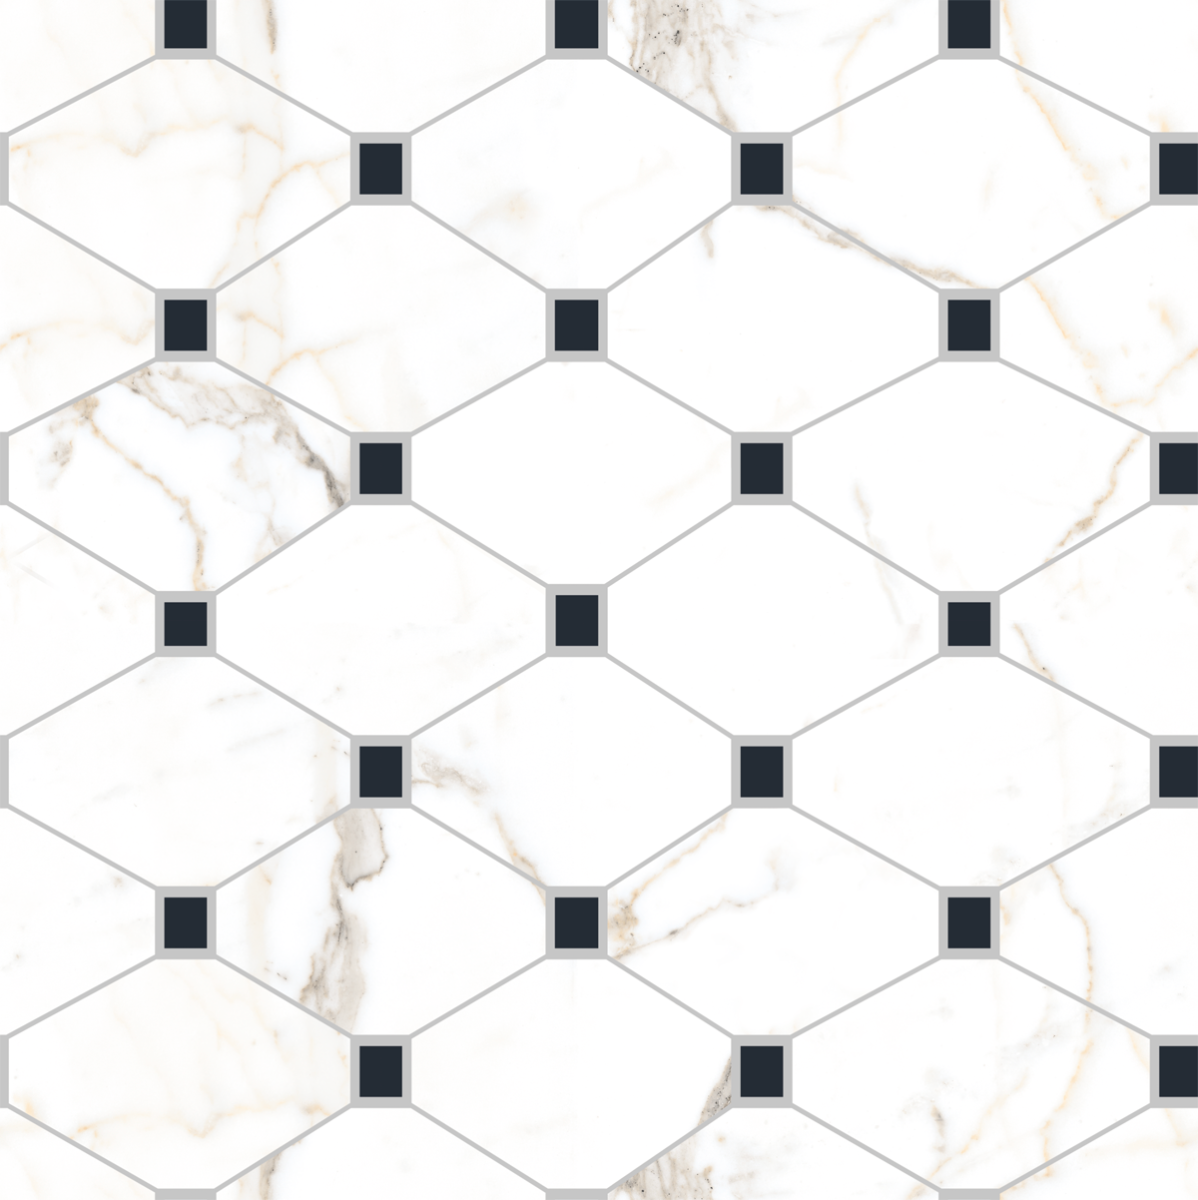 Highlighter Tiles for Living Room Tiles, Kitchen Tiles, Bedroom Tiles, Accent Tiles, Office Tiles, Bar Tiles, Restaurant Tiles, Hospital Tiles, Bar/Restaurant, Commercial/Office